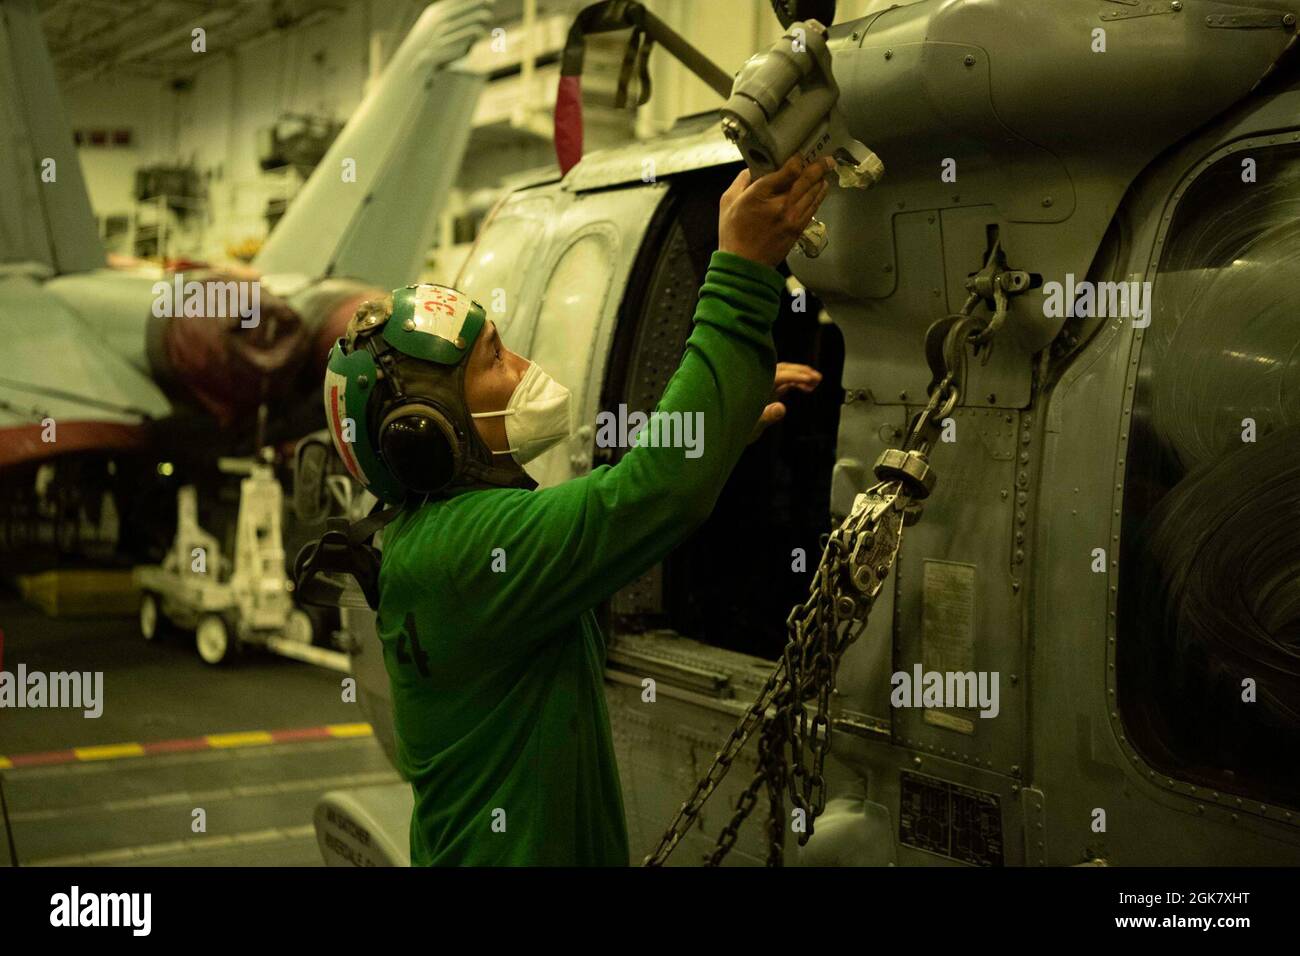 210831-N-MD461-1089 OCEANO PACIFICO (31 agosto 2021) Aviation Machinist’s Mate 1st Class Kenneth Rey Chua, nativo di Cavite, Filippine, assegnato ai “Cavalieri neri” di Helicopter Sea Combat Squadron (HSC) 4, effettua la manutenzione su un carro marino MH-60S Seahawk nel portaerei hangar di classe Nimitz USS Carl Vinson (CVN 70), a bordo di un velivolo. Agosto 31, 2021. Carl Vinson Carrier Strike Group è in fase di implementazione nell'area operativa della 7a flotta degli Stati Uniti per migliorare l'interoperabilità con alleati e partner per fungere da forza di risposta pronta a sostenere una regione indopacifica libera e aperta. Foto Stock